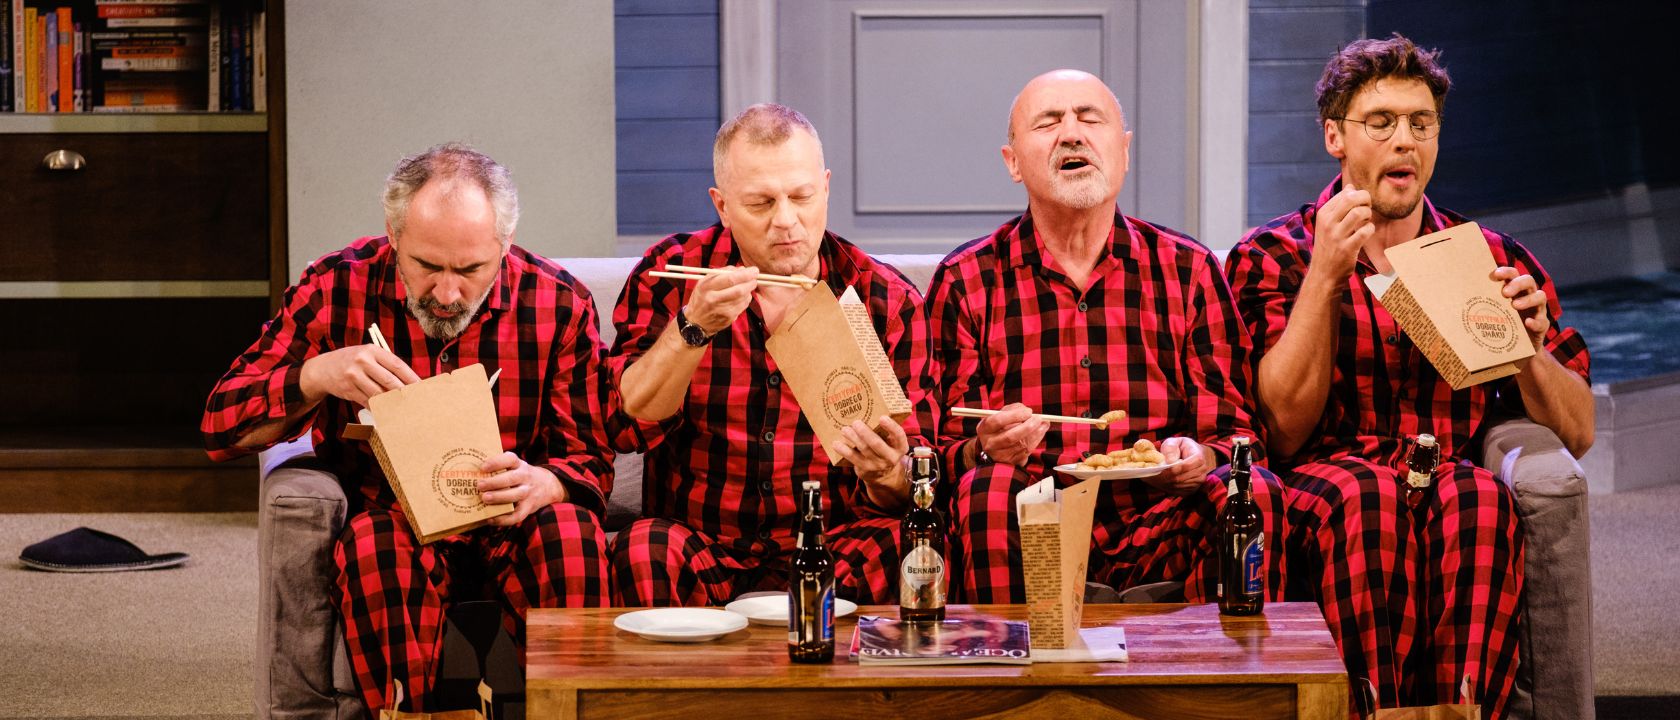 Biali heteroseksualni mężczyźni czterech mężczyzn w piżamach jedzących chińszczyznę